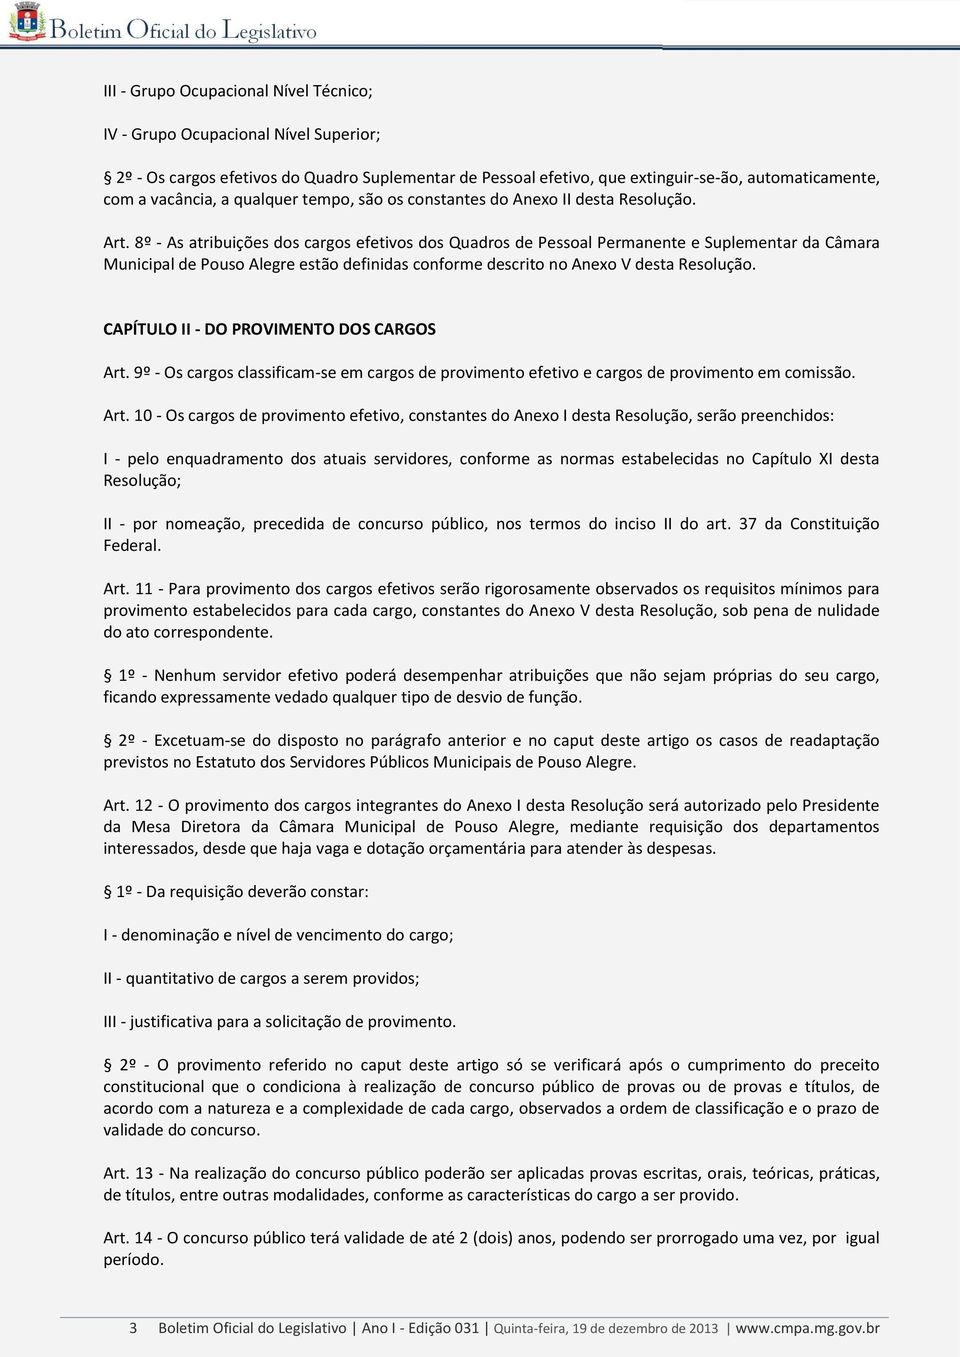 8º - As atribuições dos cargos efetivos dos Quadros de Pessoal Permanente e Suplementar da Câmara Municipal de Pouso Alegre estão definidas conforme descrito no Anexo V desta Resolução.